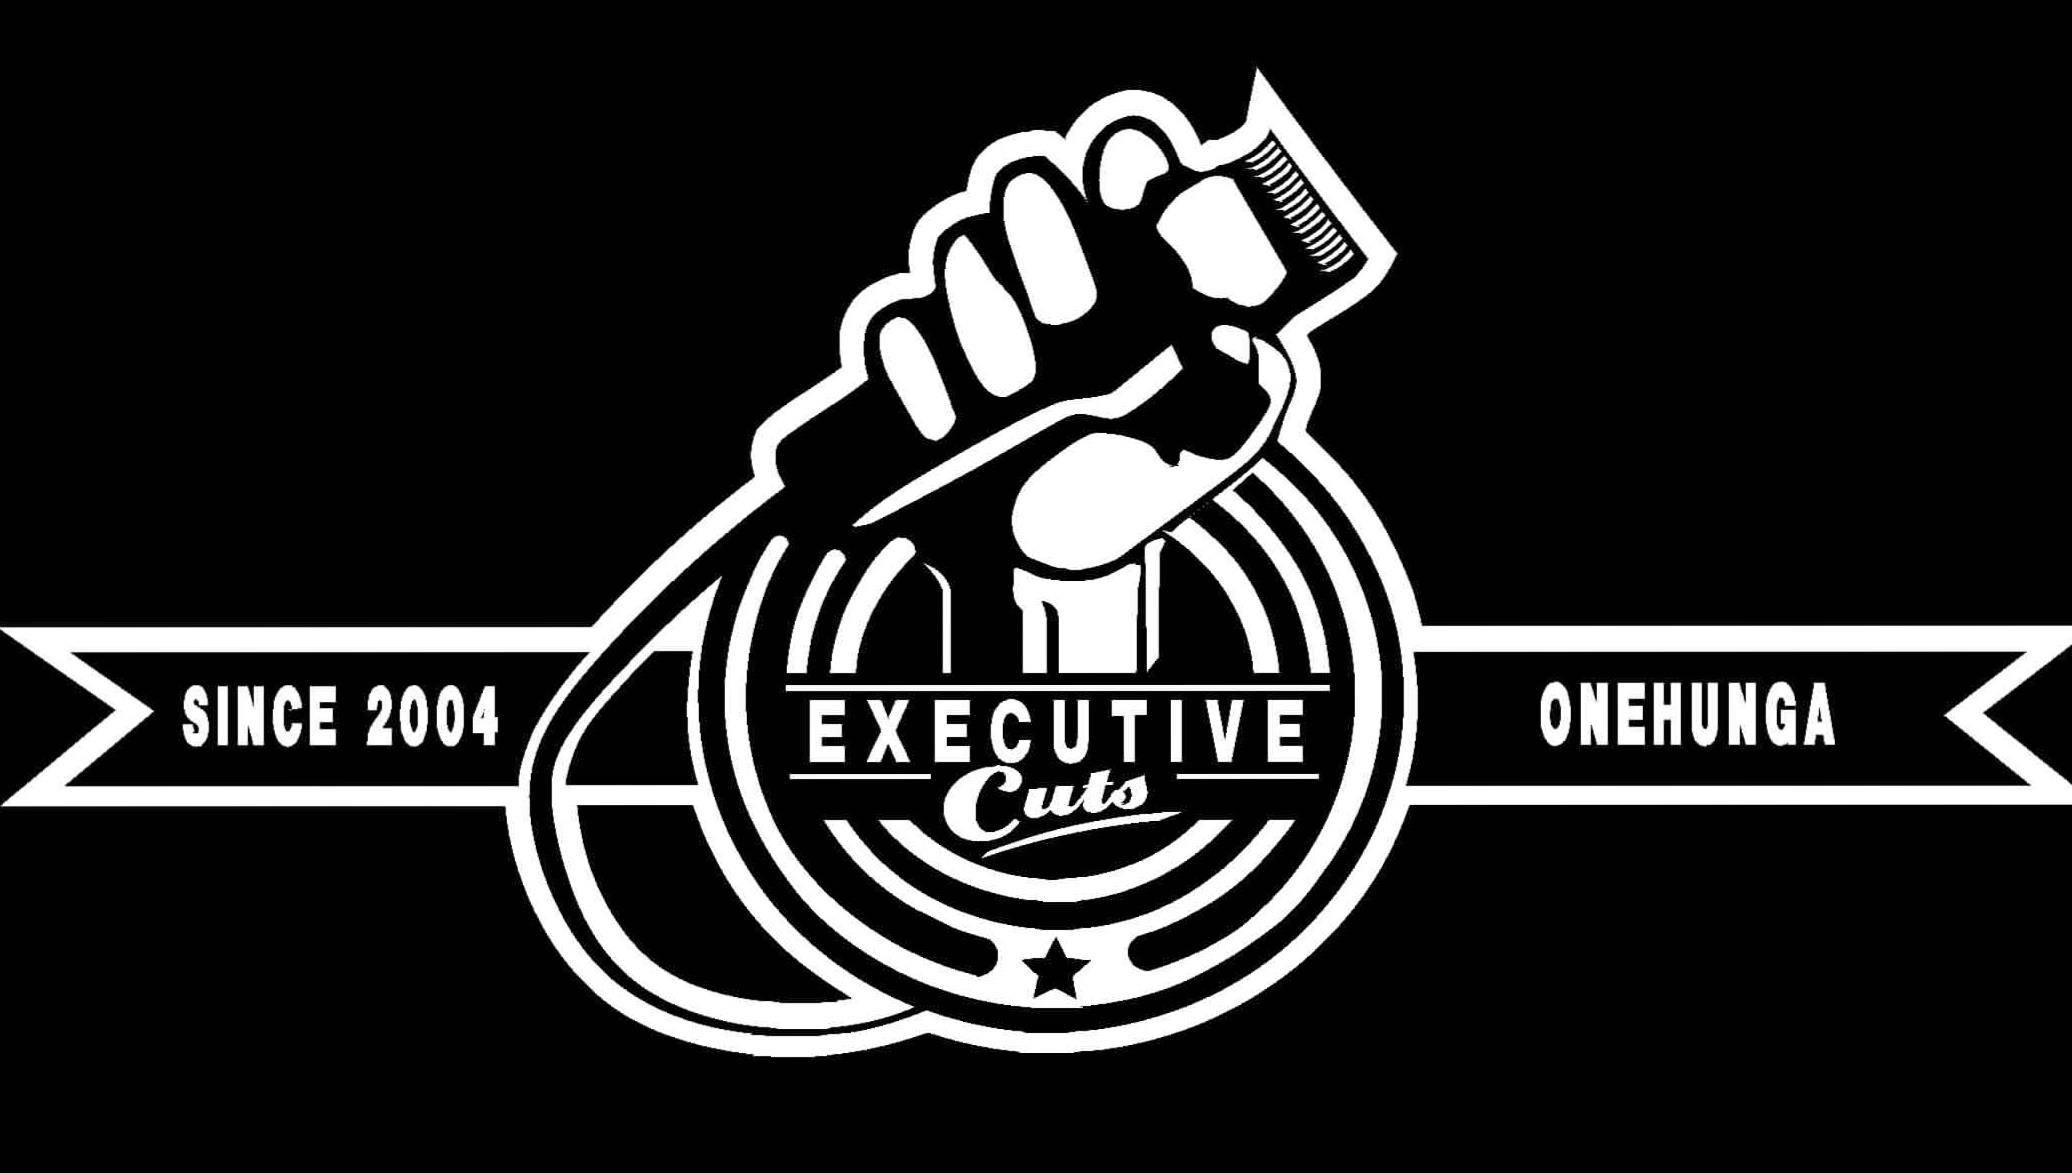 Executive Cuts